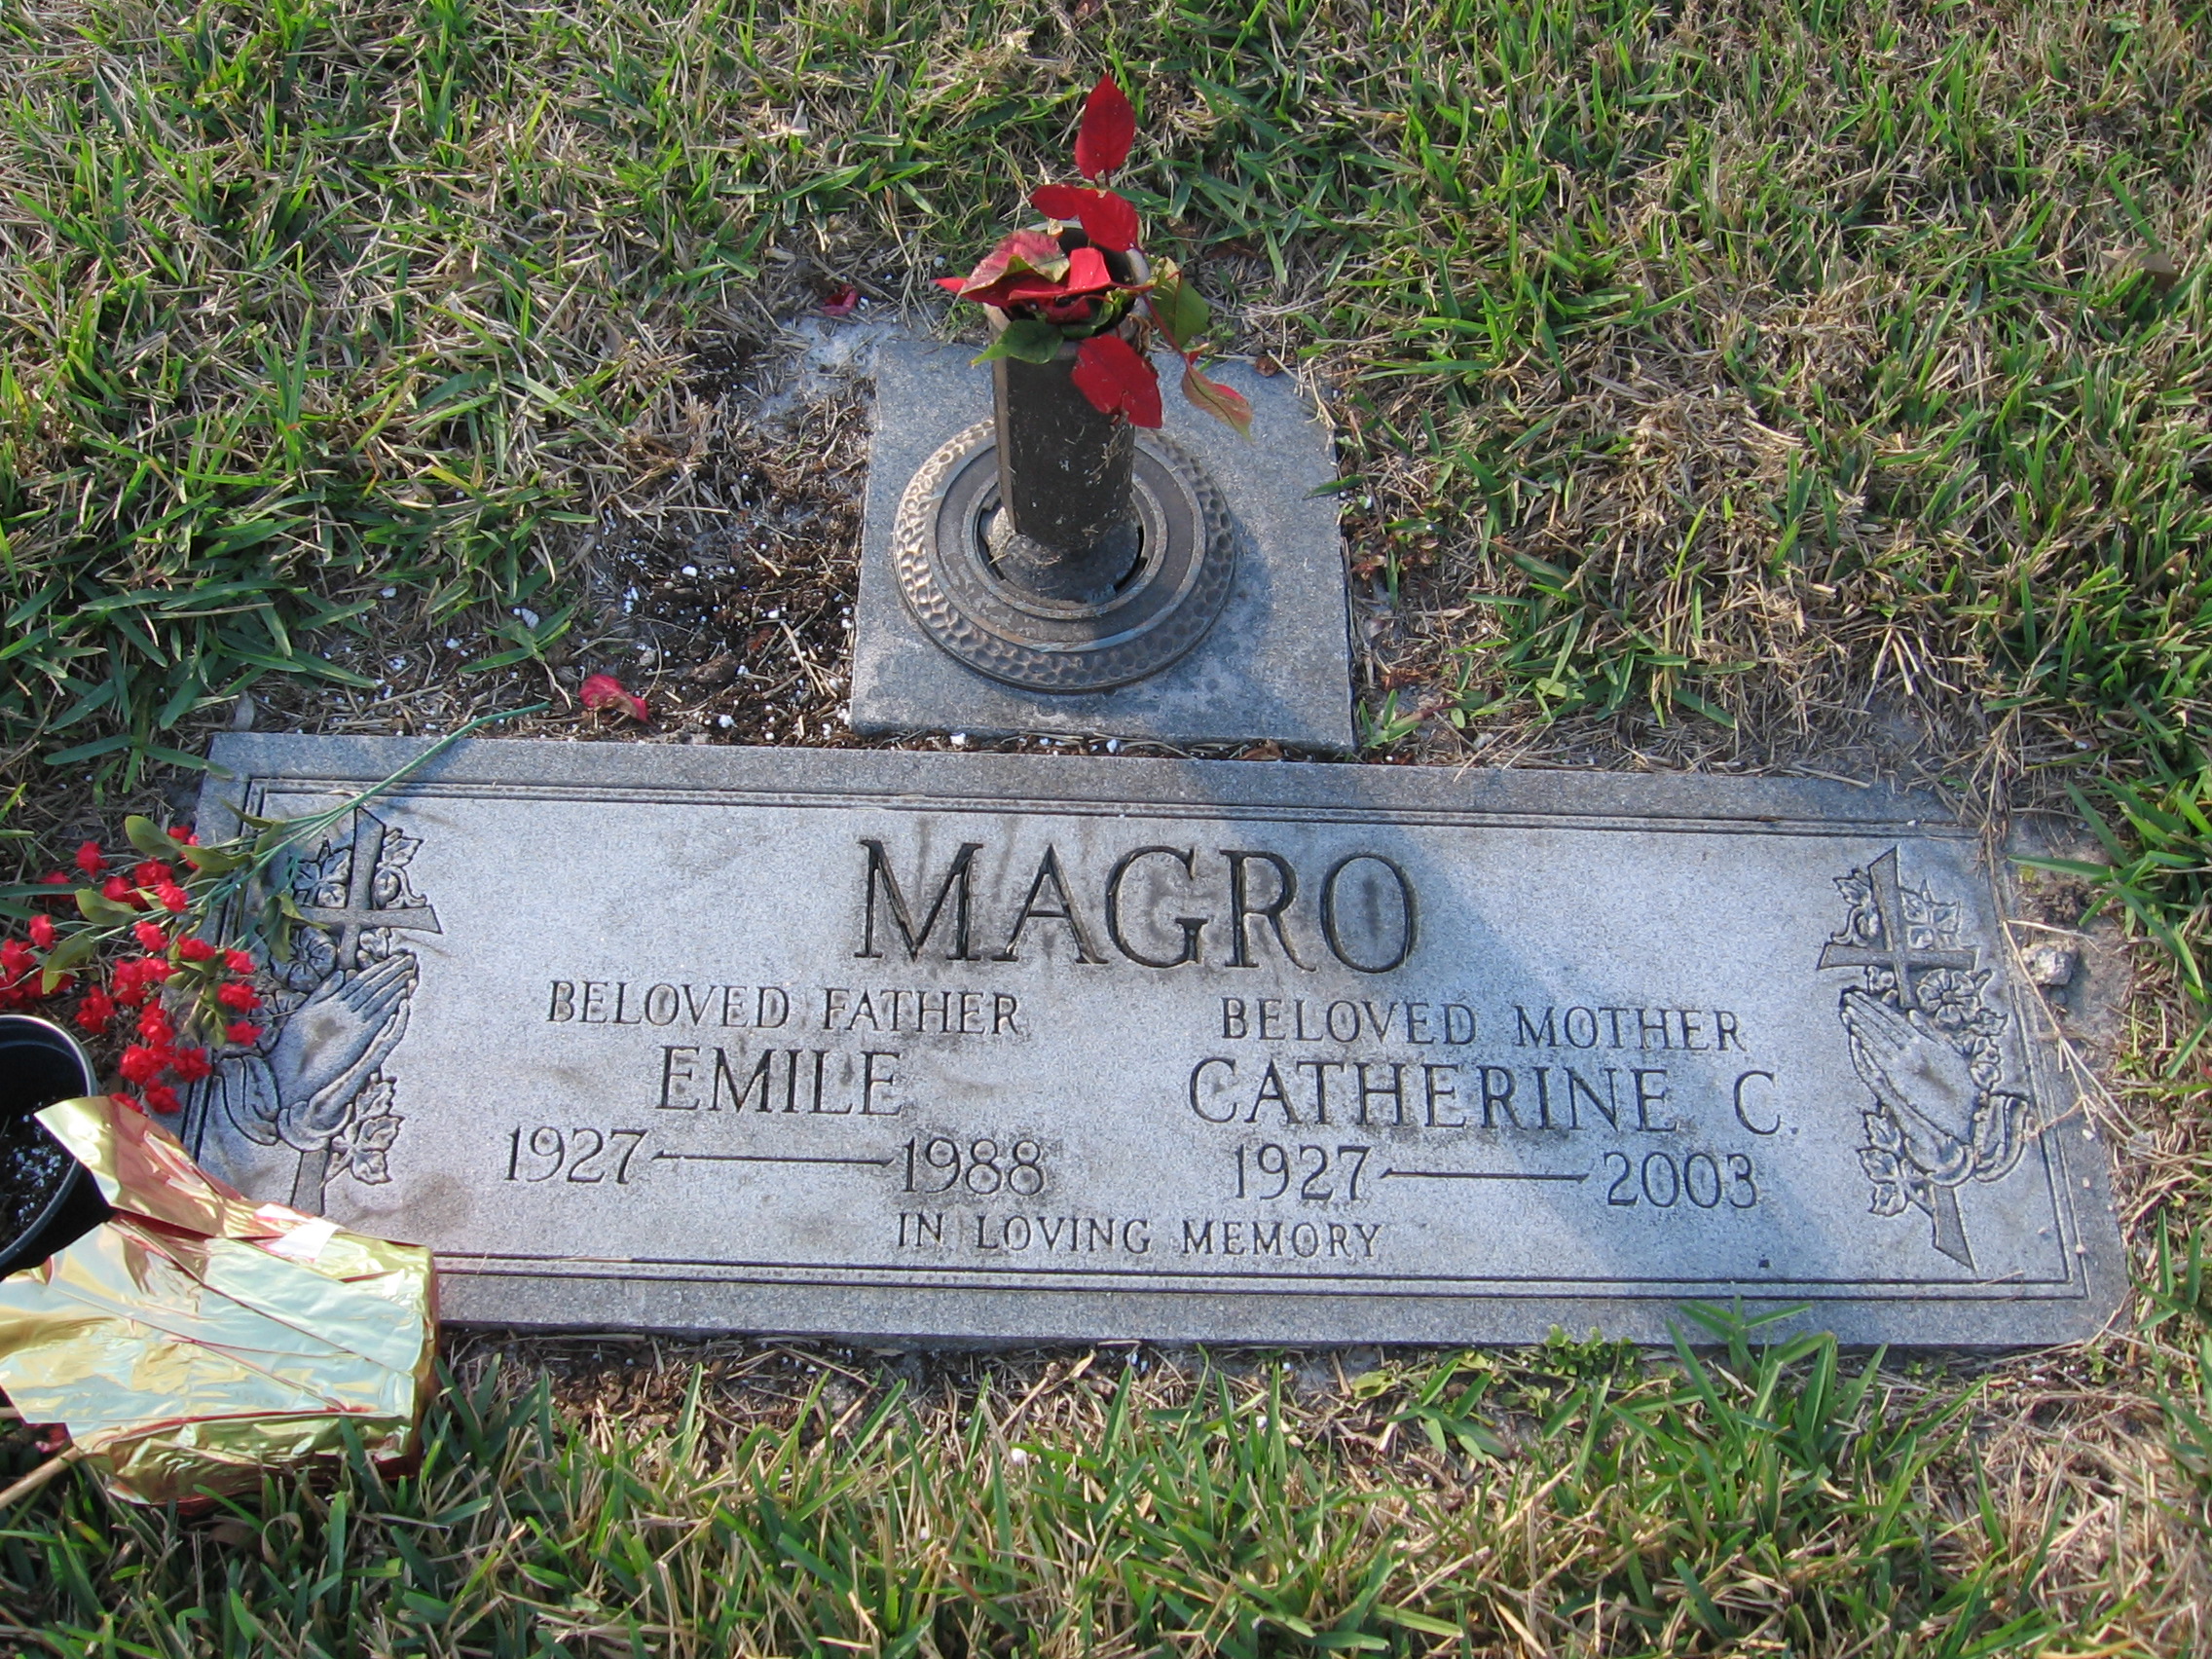 Catherine C Magro